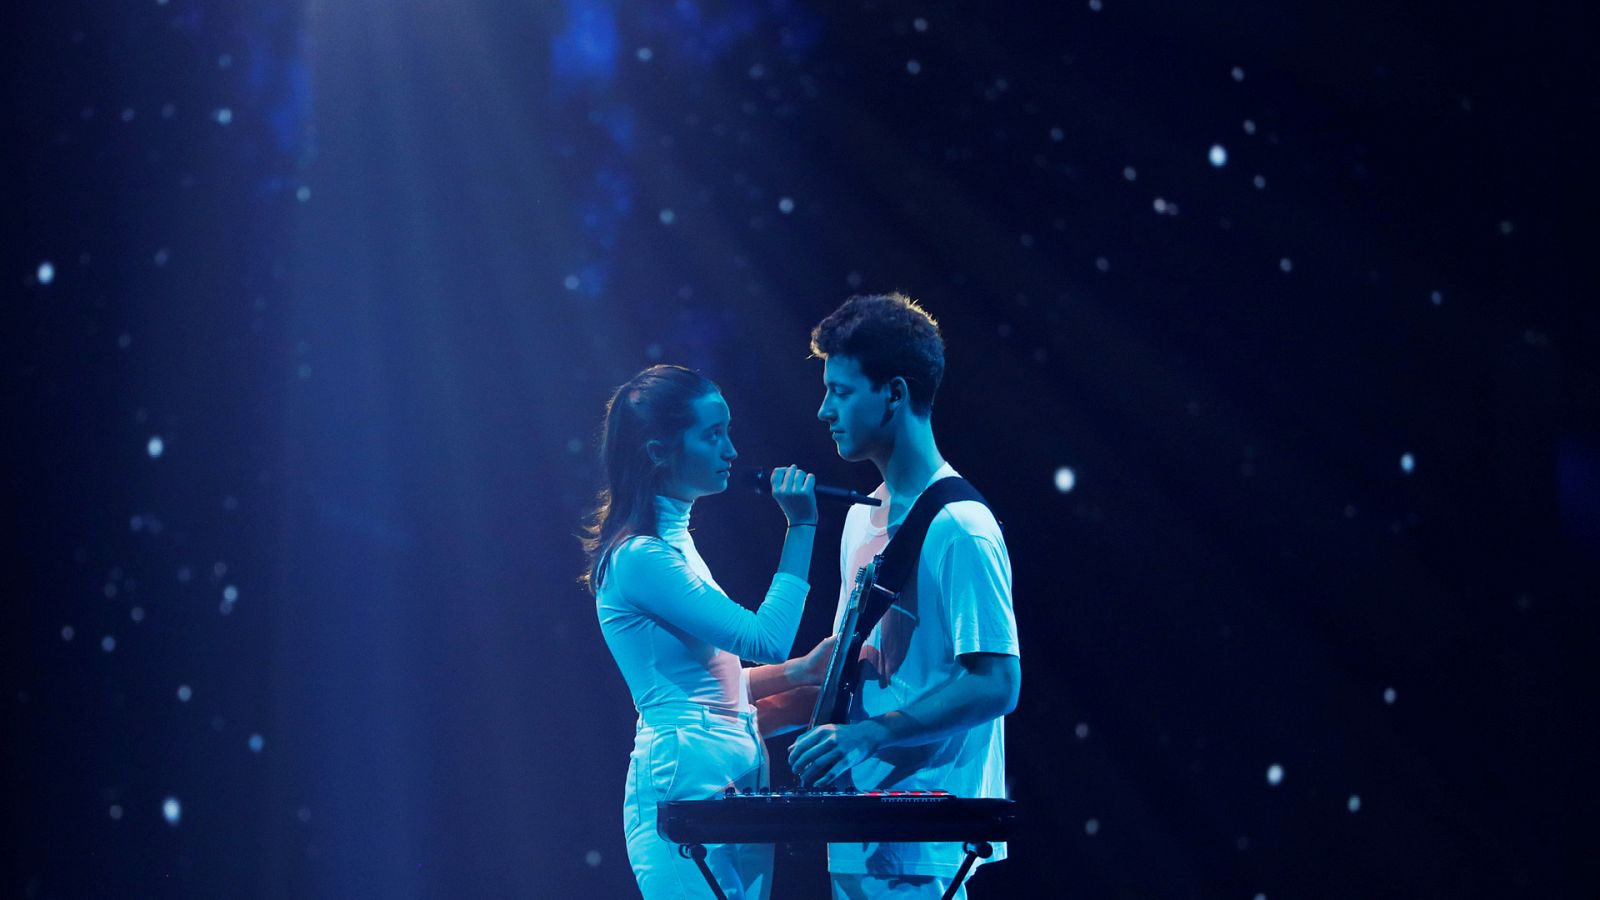 Eurovisión 2019 - Eslovenia: Zala Kralj & Gasper Santl cantan "Sebi" en la final